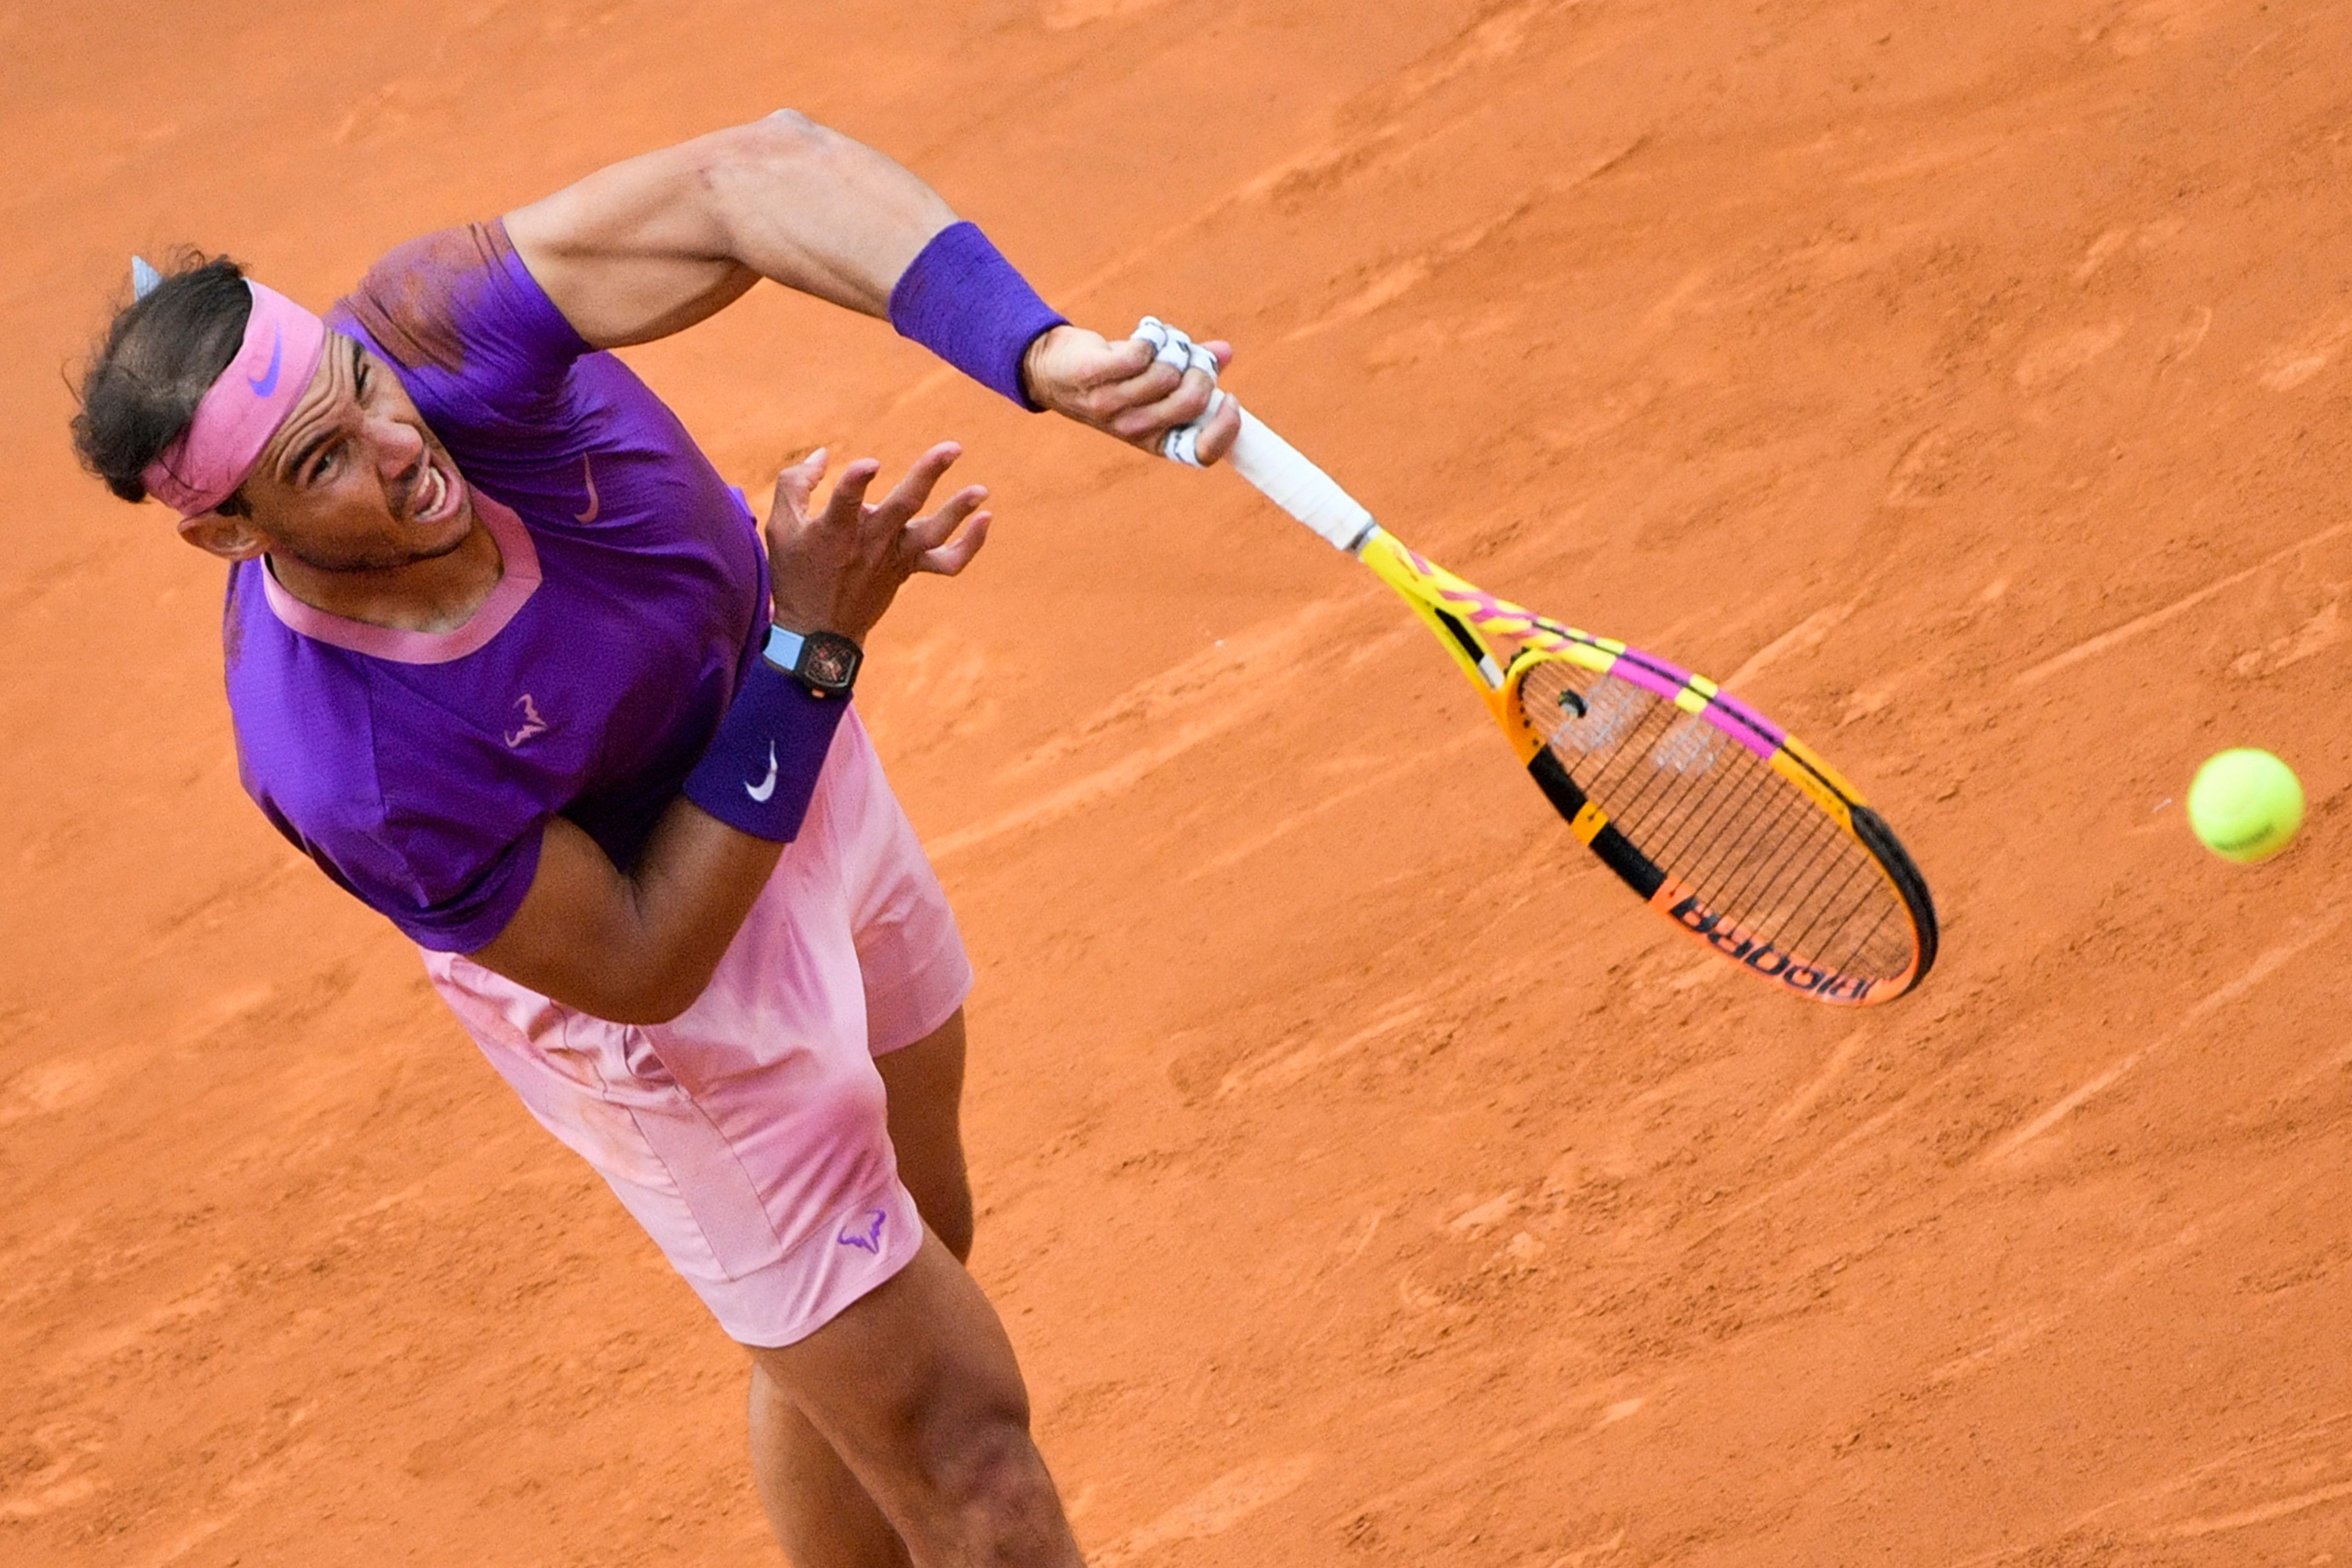 Rafael Nadal beats Novak Djokovic to win 10th Italian Open title